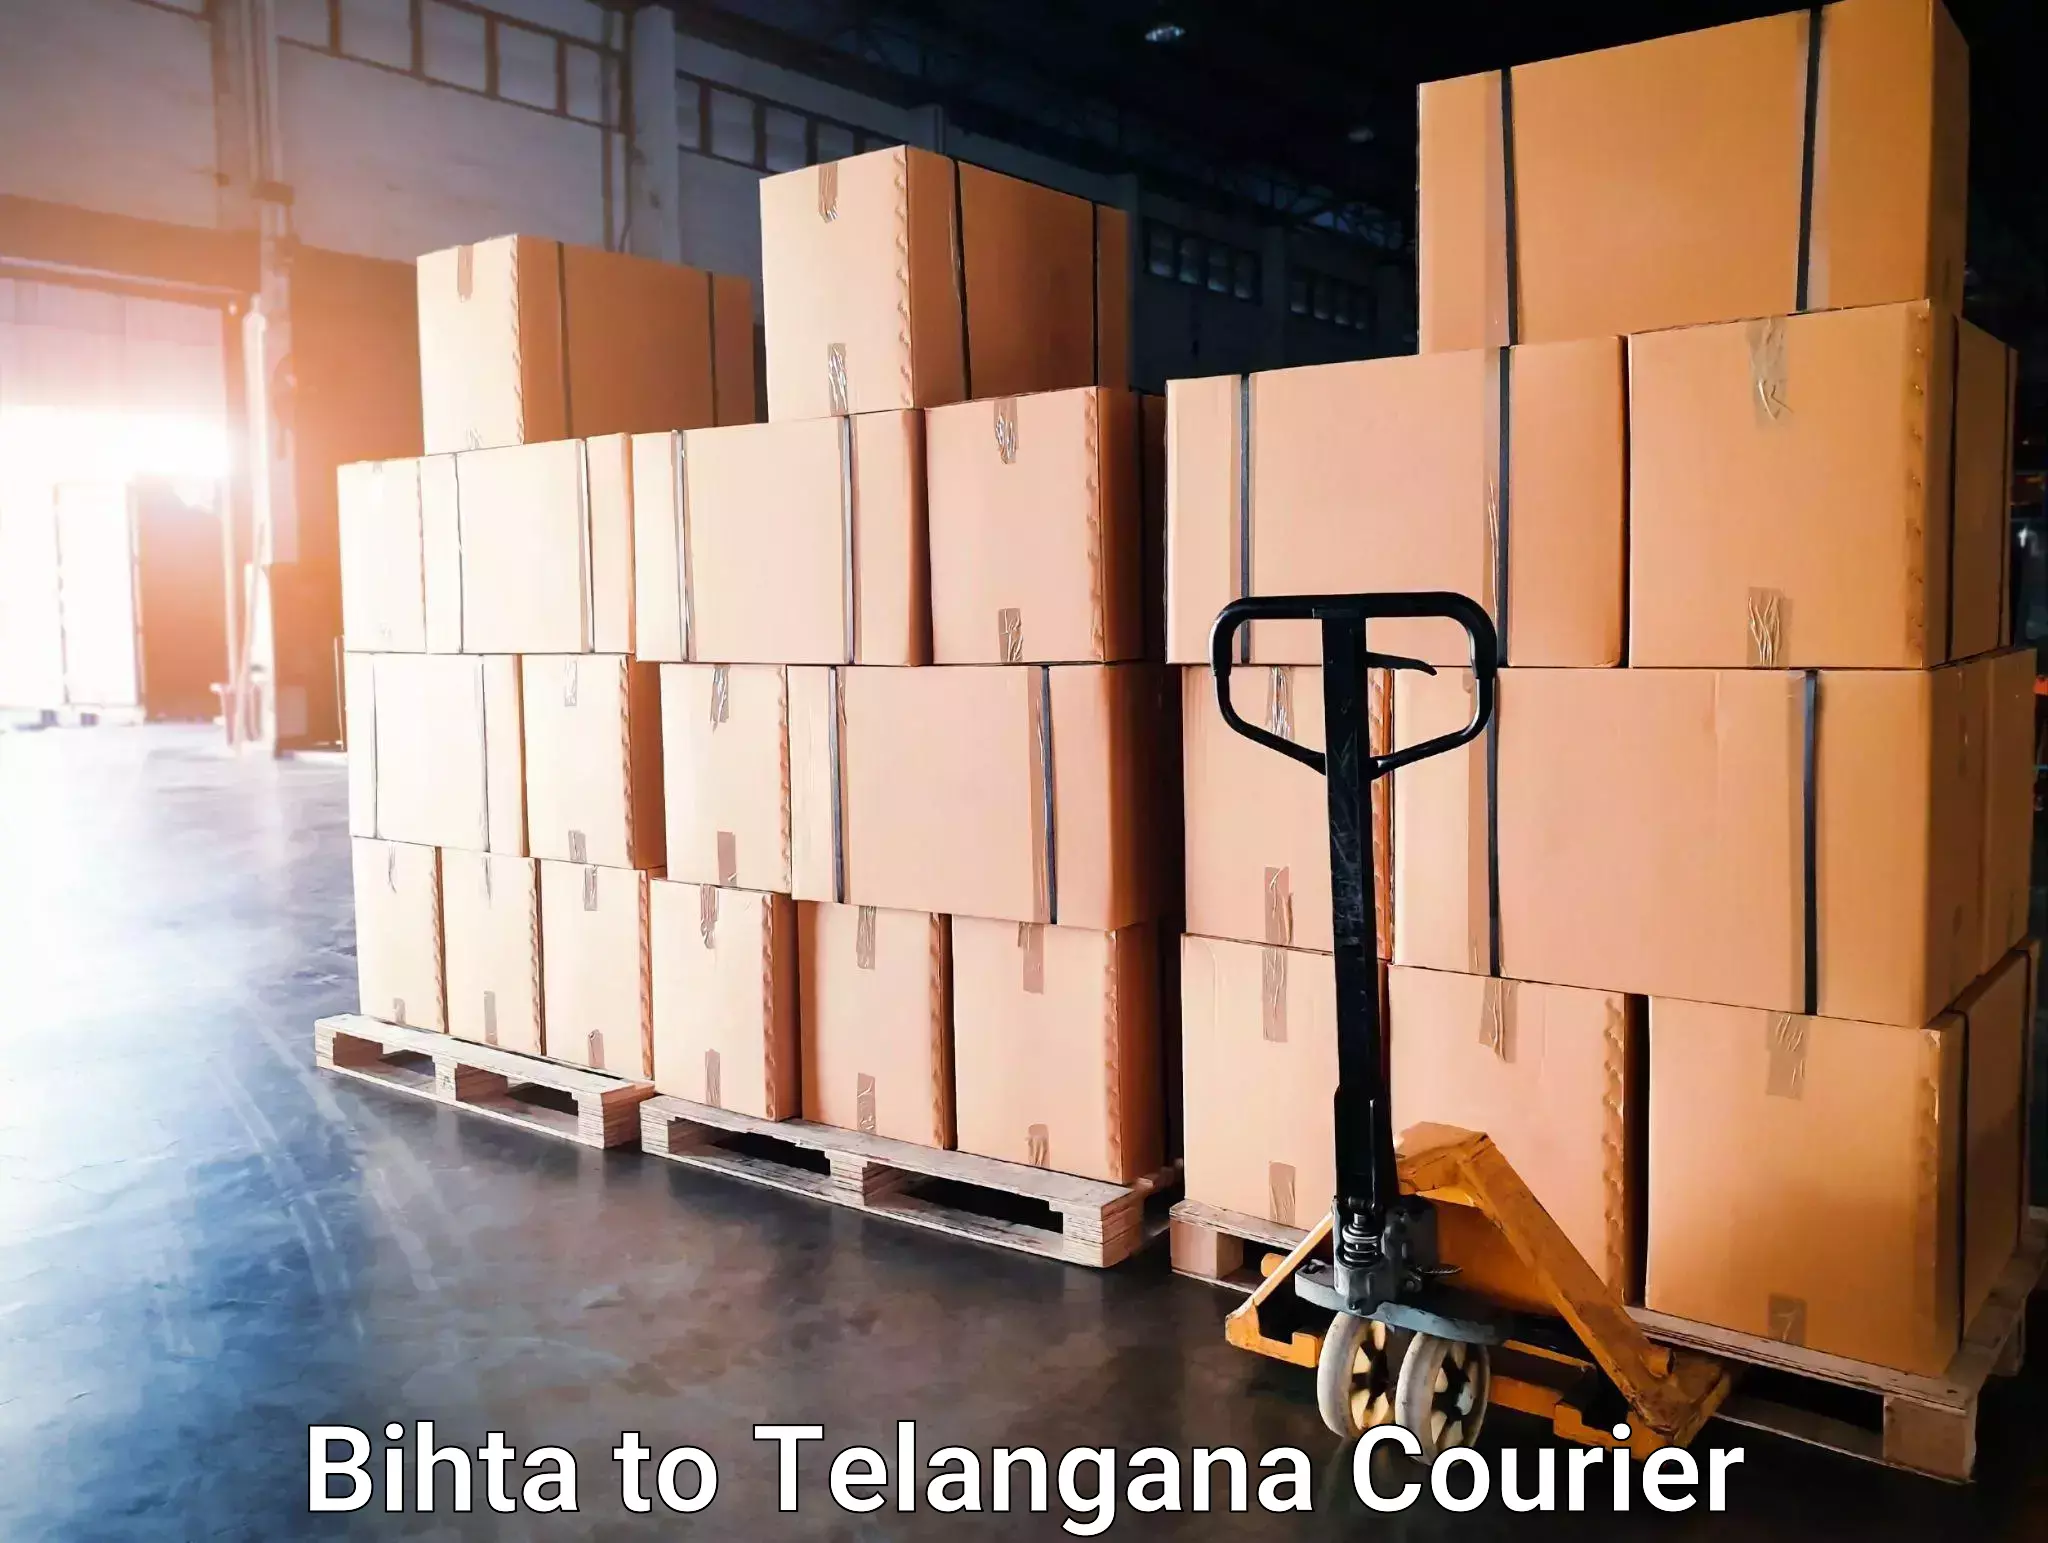 Local furniture movers Bihta to Patancheru